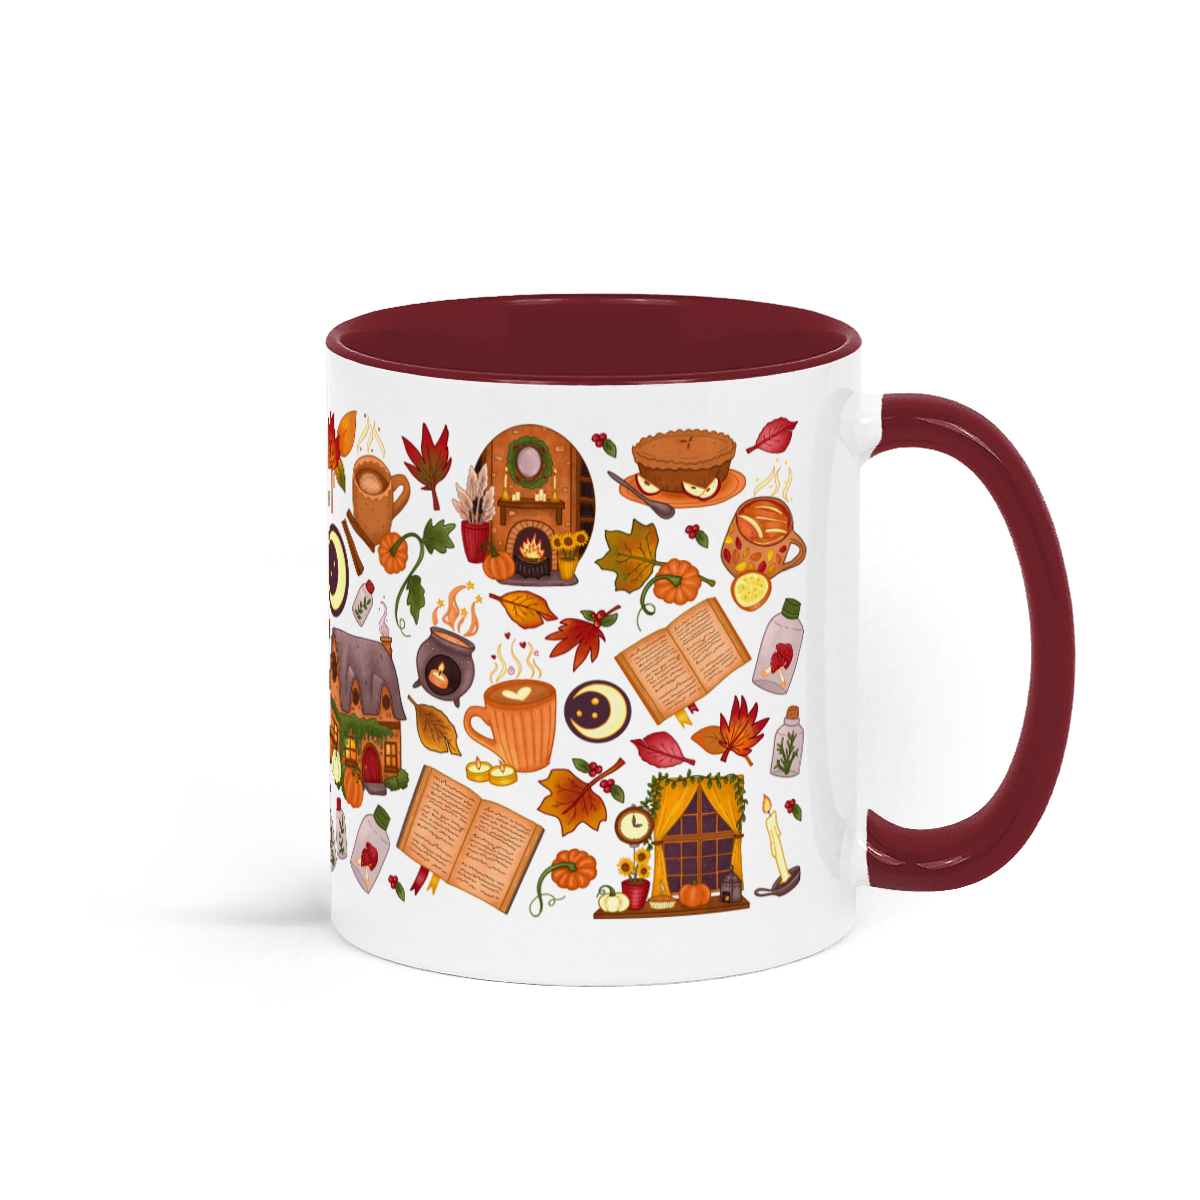 Autumn Mug of Holding